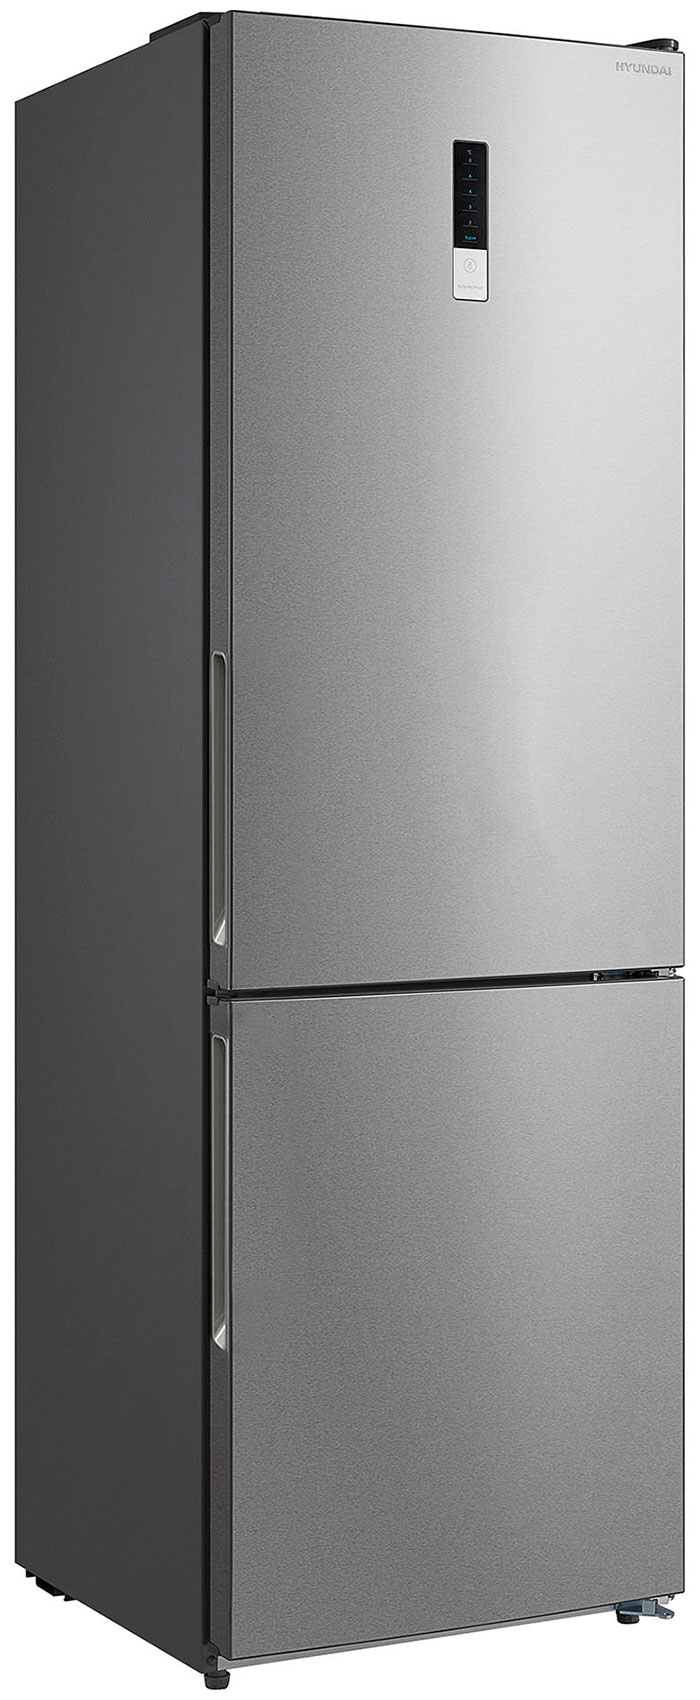 Двухкамерный холодильник Hyundai CC3595FIX нержавеющая сталь двухкамерный холодильник hyundai cc3595fwt белый